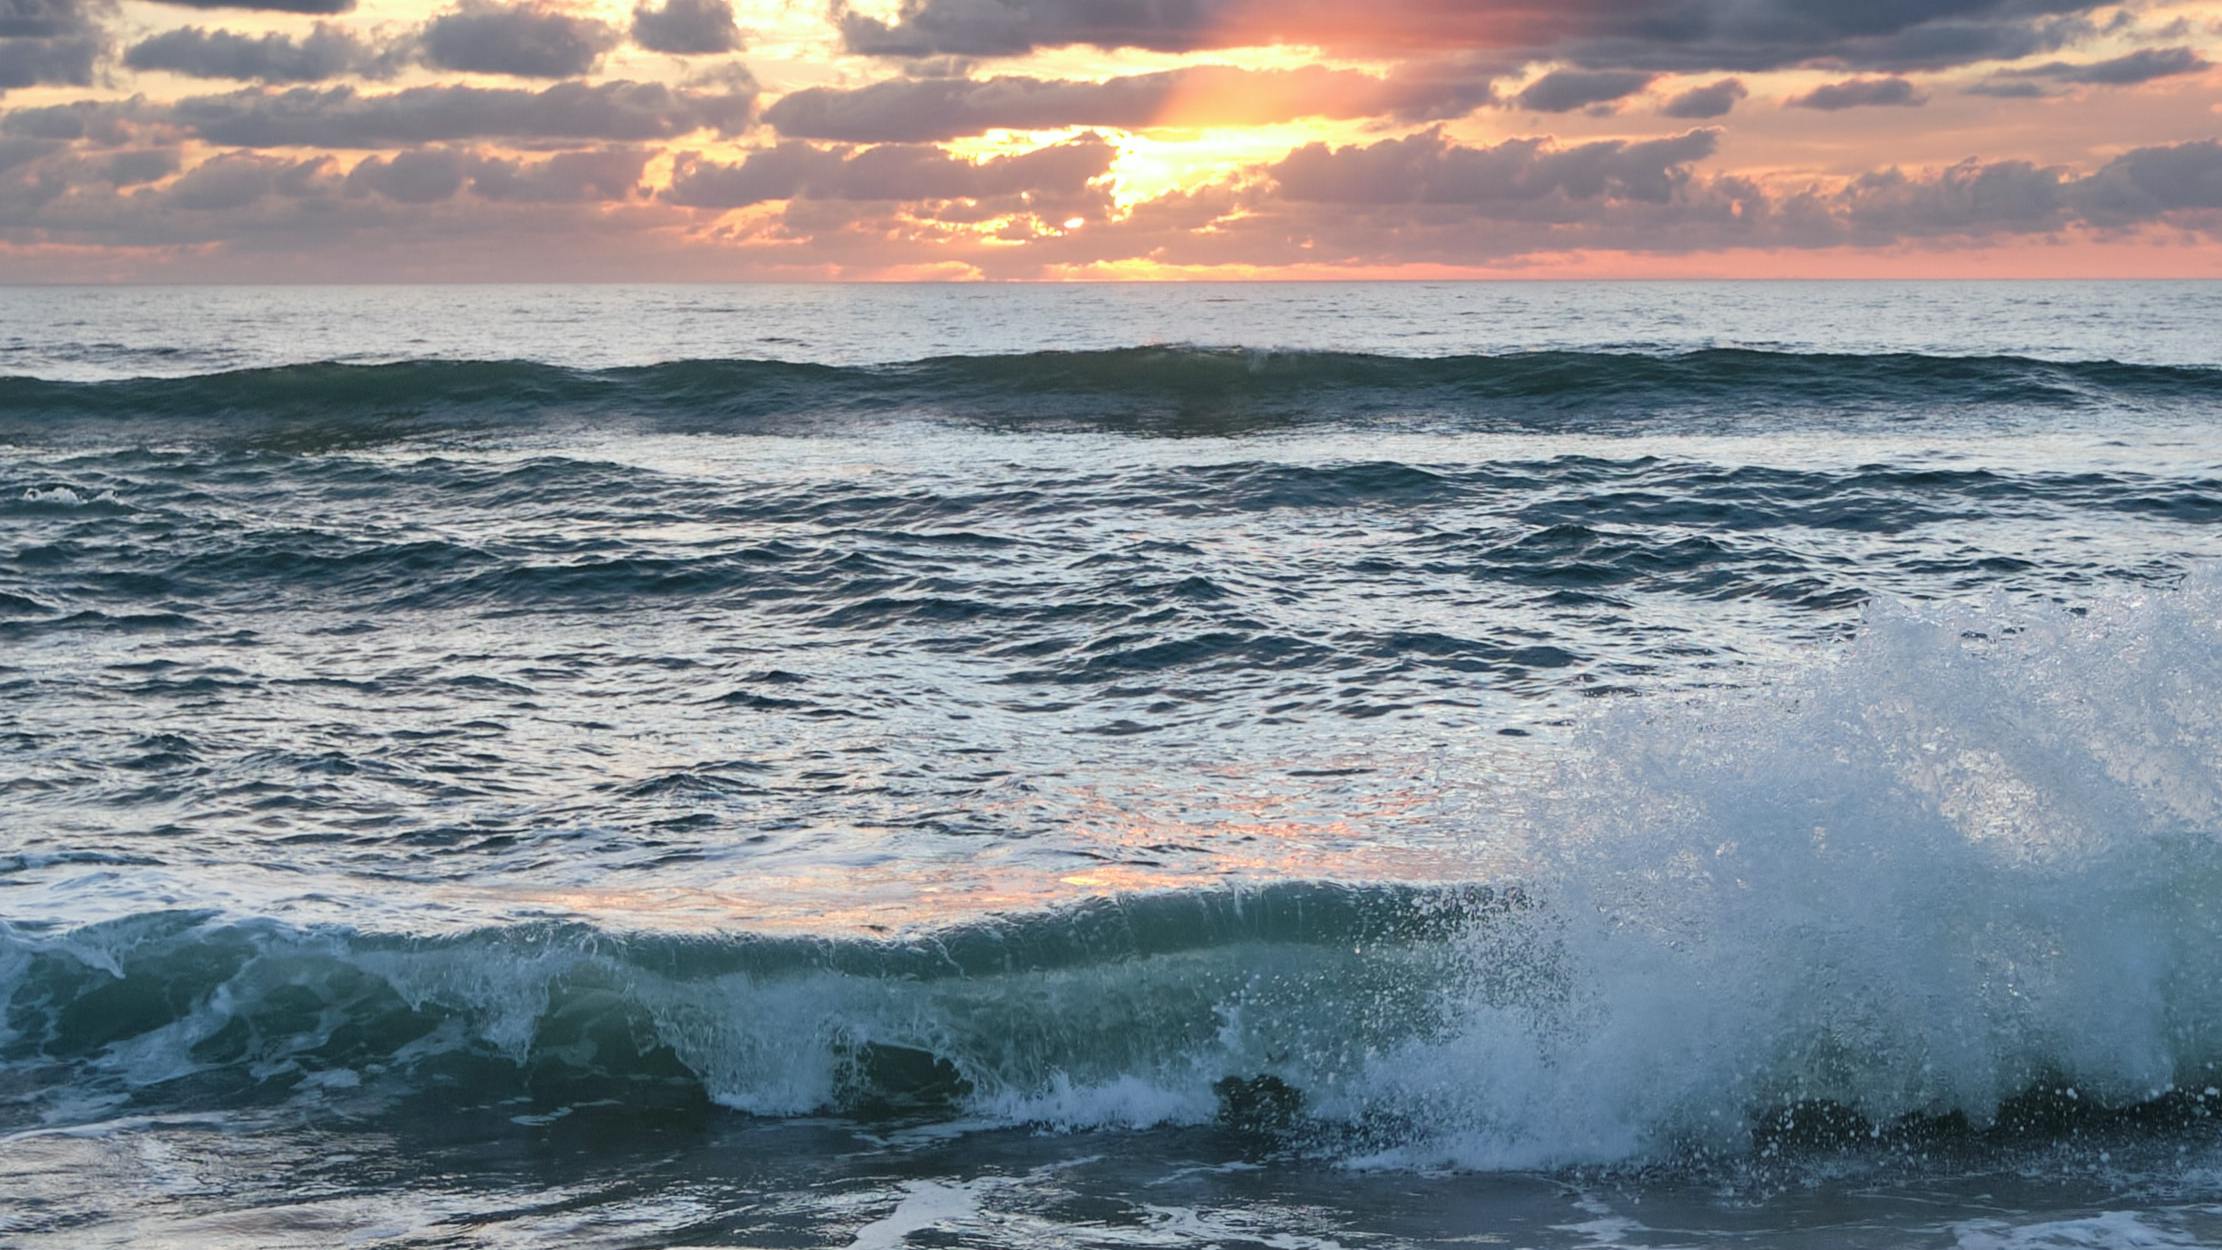 Waves crash at sunset or sunrise.